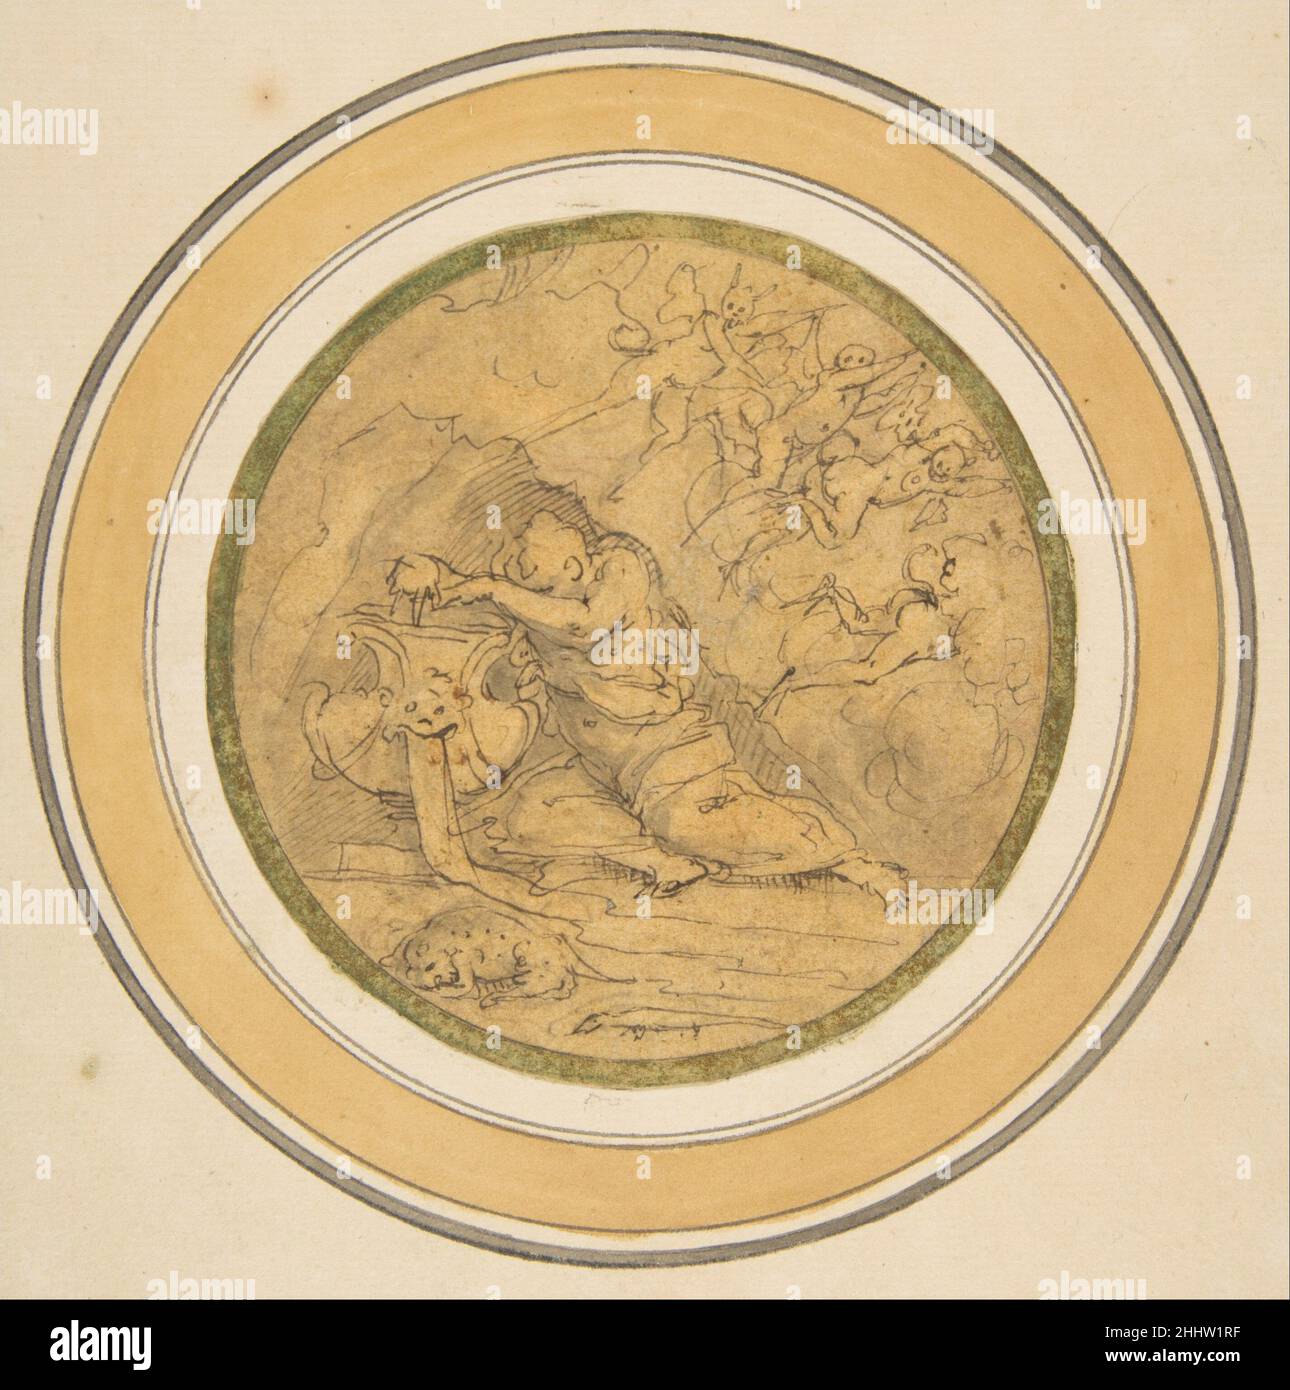 Allégorie de l'oubli ca.1570 Giorgio Vasari Italien les deux croquis rapides avec l'allégorie de l'oubli (suivant no67.95.3) et l'allégorie du sommeil (suivant n°67.95.4) ont été exécutés en stylo et encre brune par l'artiste et historien de la Renaissance Giorgio Vasari d'une manière rapide et spontanée pour enregistrer ses idées pour un plafond ou une décoration murale.En 1981, Julian Kliemann a fait remarquer que les dessins allégoriques de Vasari dans le Metropolitan Museum of Art correspondent à deux sections d'une décoration de plafond d'une chambre (éventuellement pour Francesco I de' Medici) planifiée par Vincenzo Borghini dans un Banque D'Images